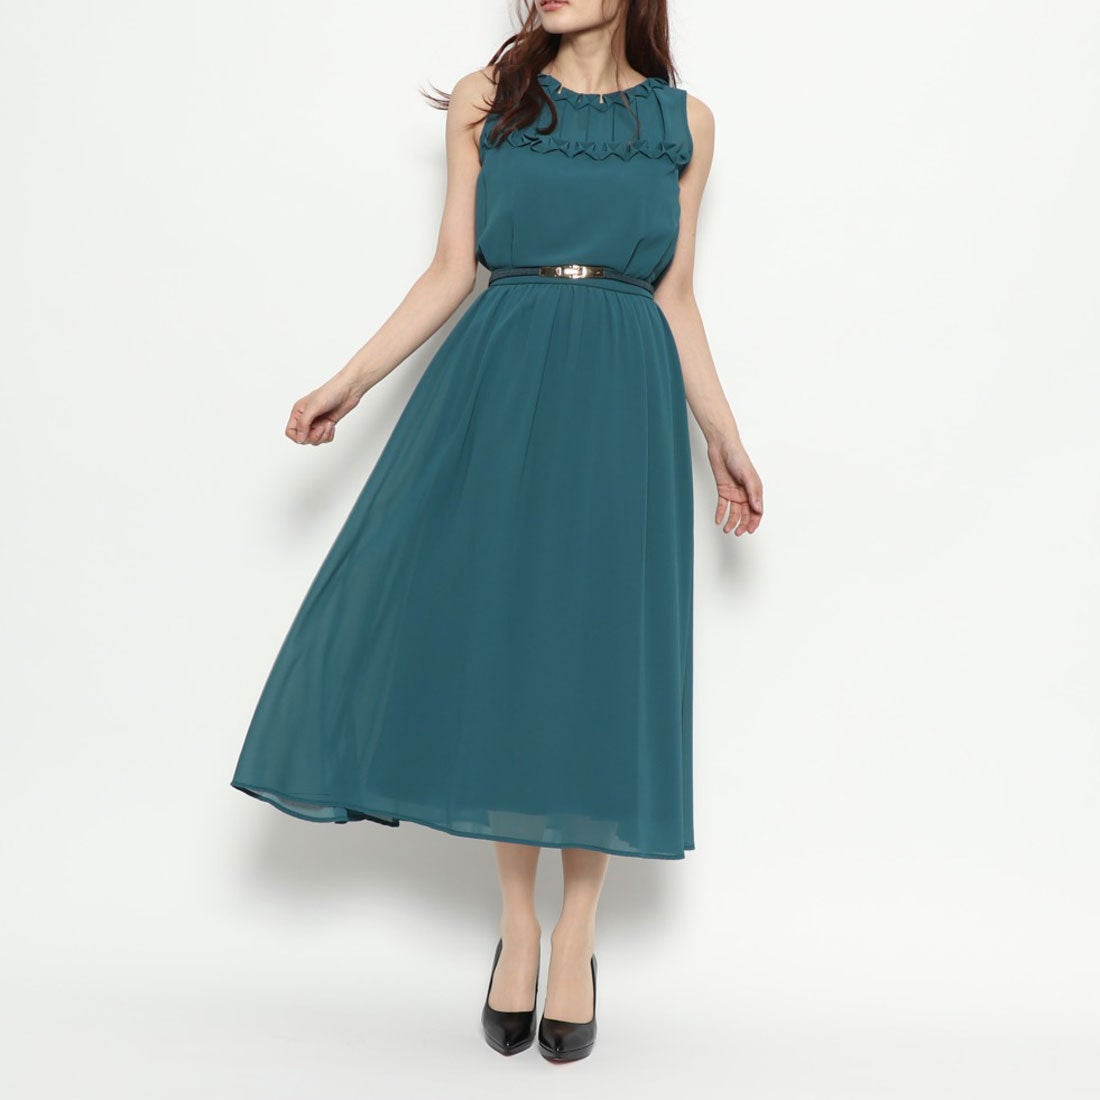 LilyBrown One-piece dress